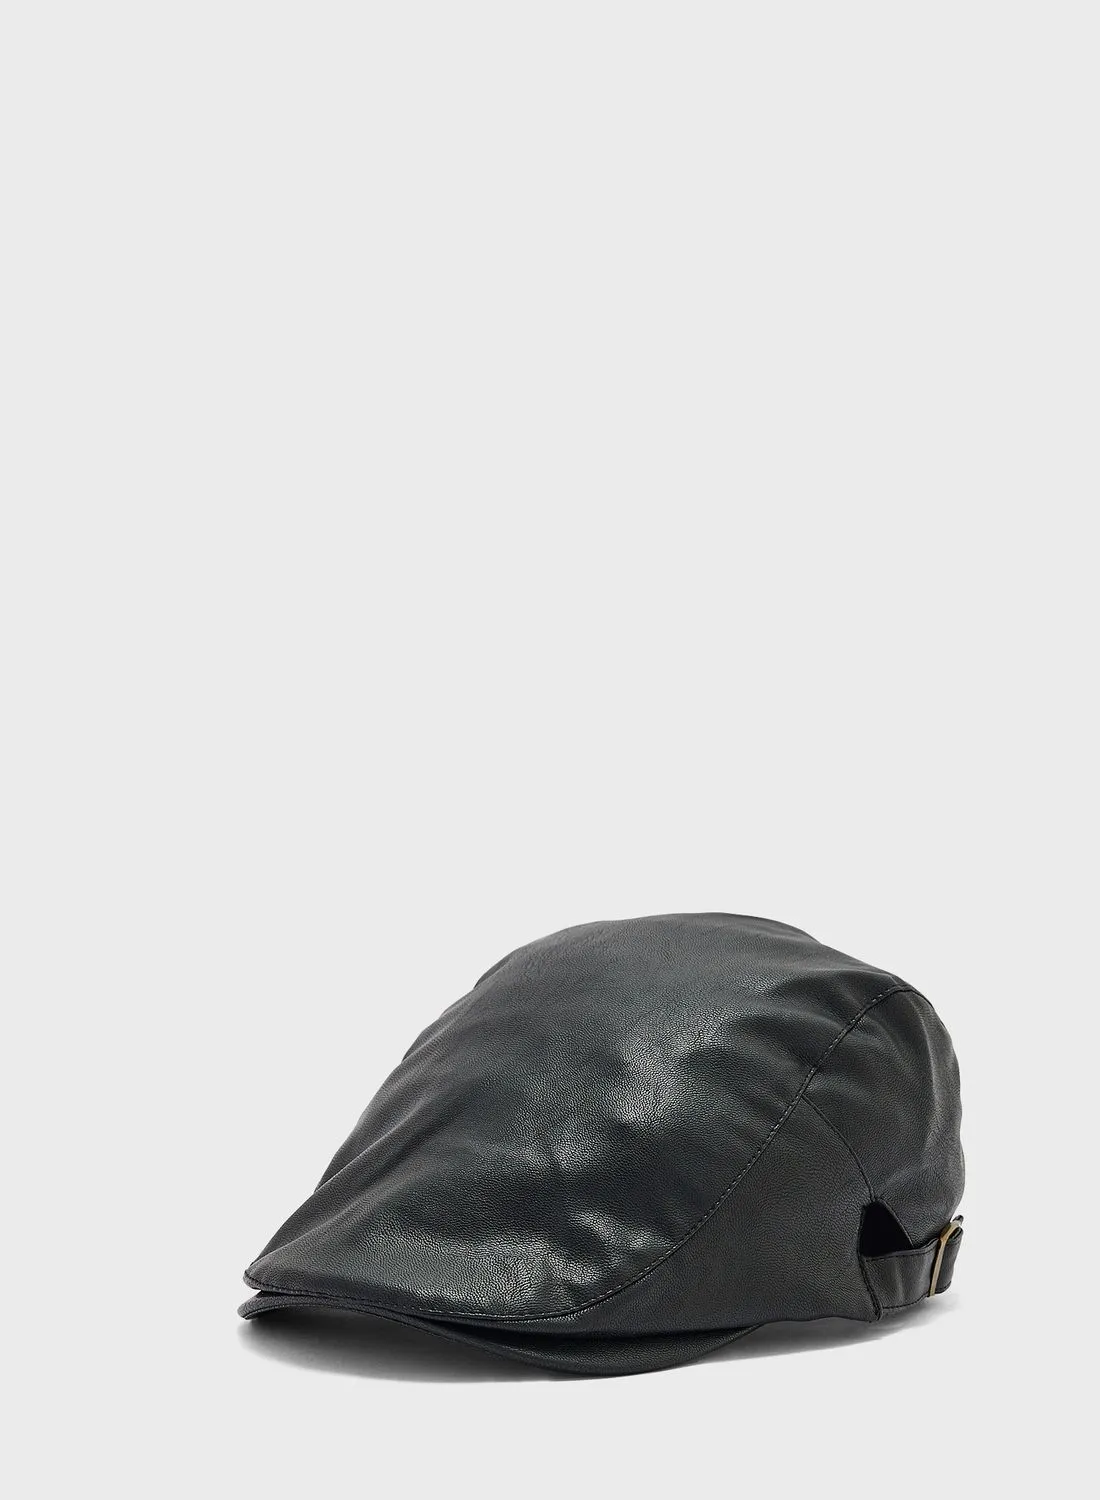 قبعة مسطحة من الجلد الصناعي من روبرت وود